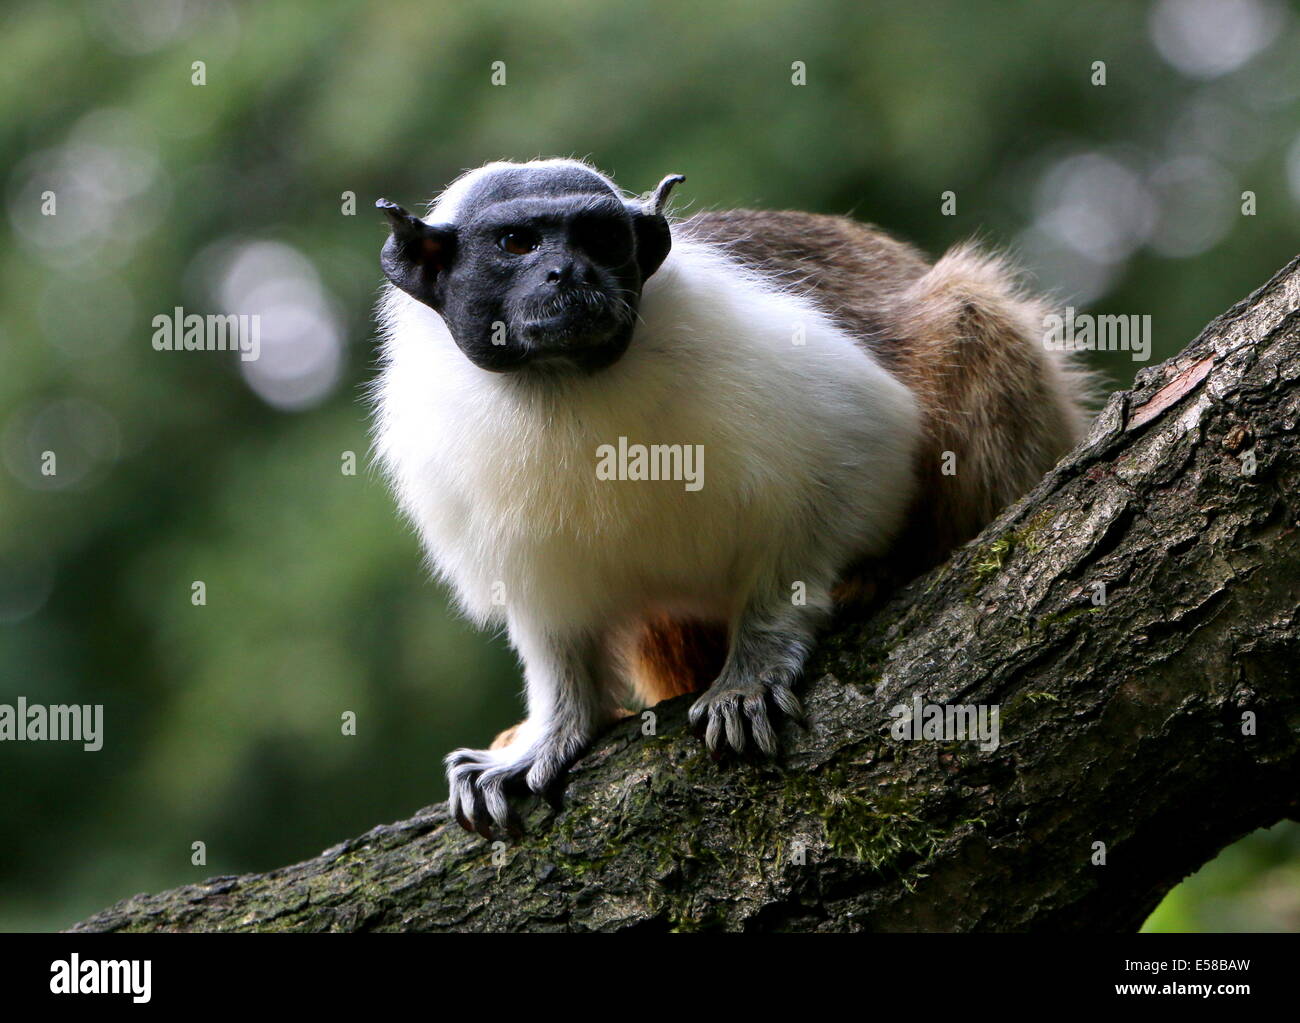 Trauerschnäpper Tamarin Affe (Saguinus bicolor), gefährdeten Affenarten aus  dem brasilianischen Amazonas-Regenwald Stockfotografie - Alamy